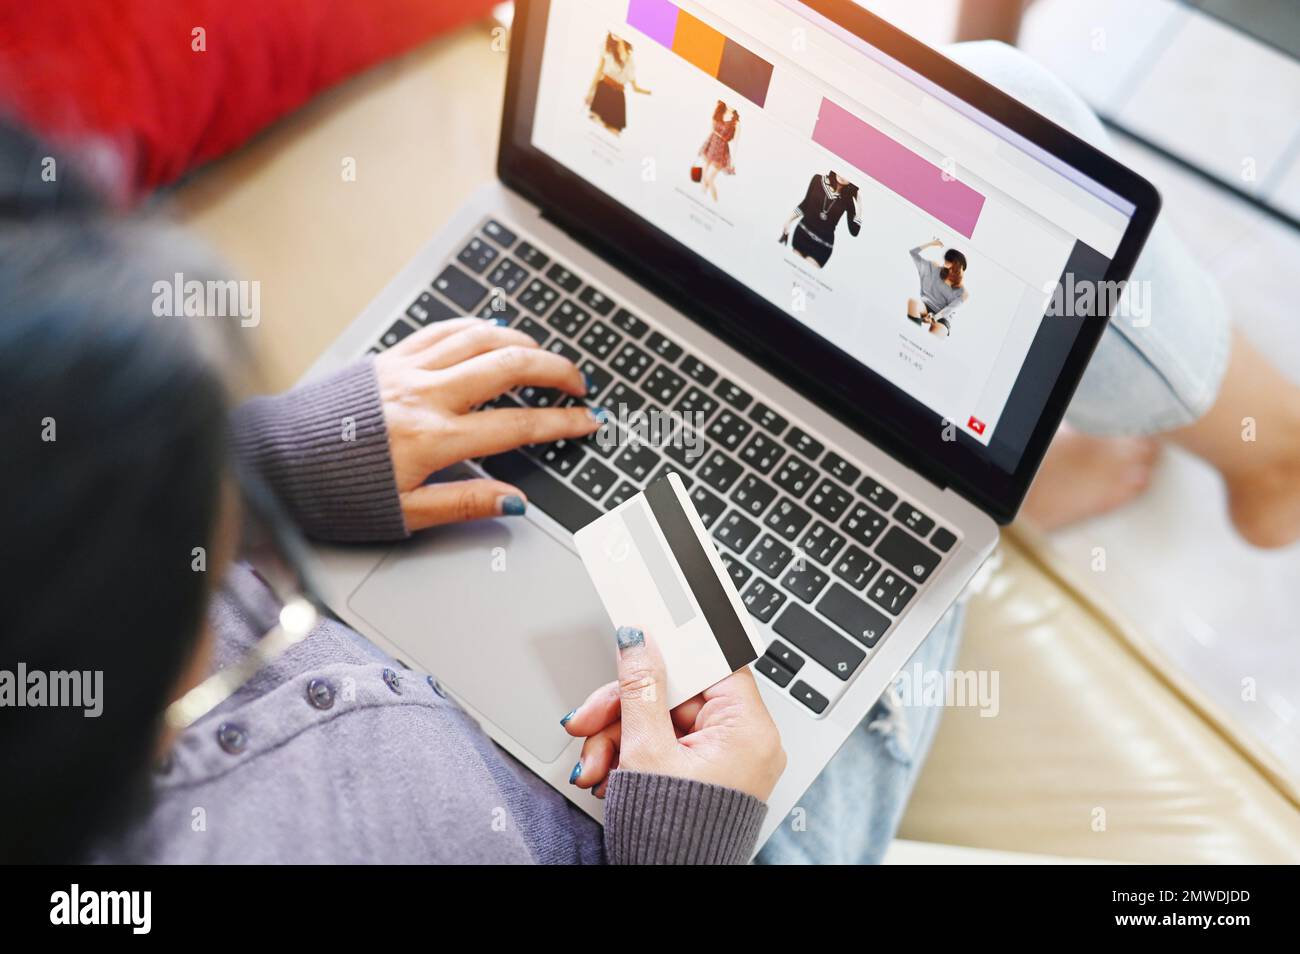 donna che acquista in linea, le donne che si rilassano nel web site in linea di shopping in linea domestico sul laptop e-commercio facile in linea del negozio paga con la carta di credito happine femminile asiatica Foto Stock